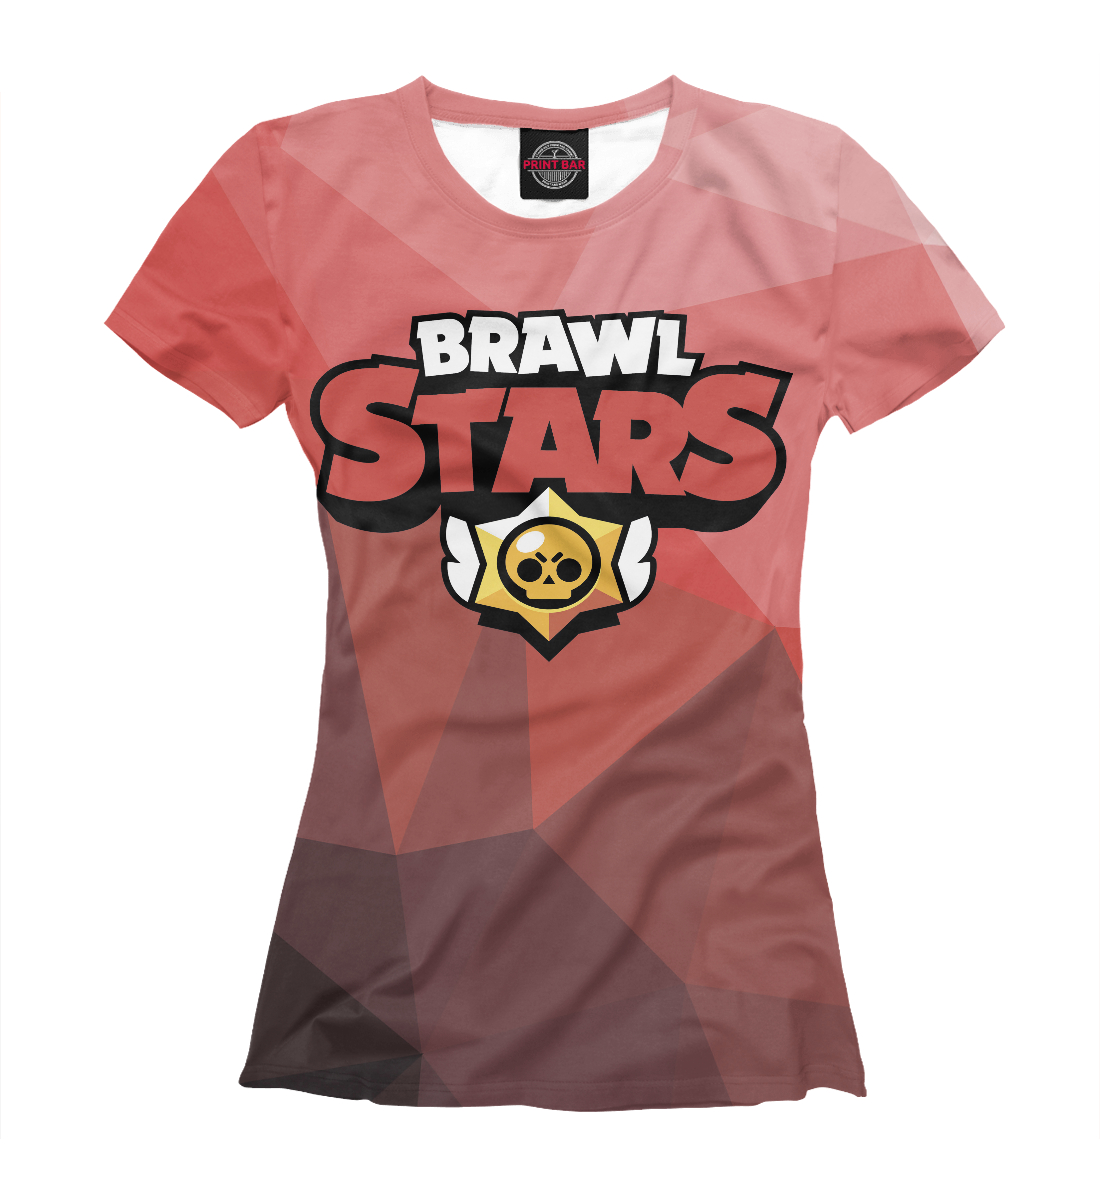 Футболка Brawl Stars для девочек, артикул: CLH-186575-fut-1mp